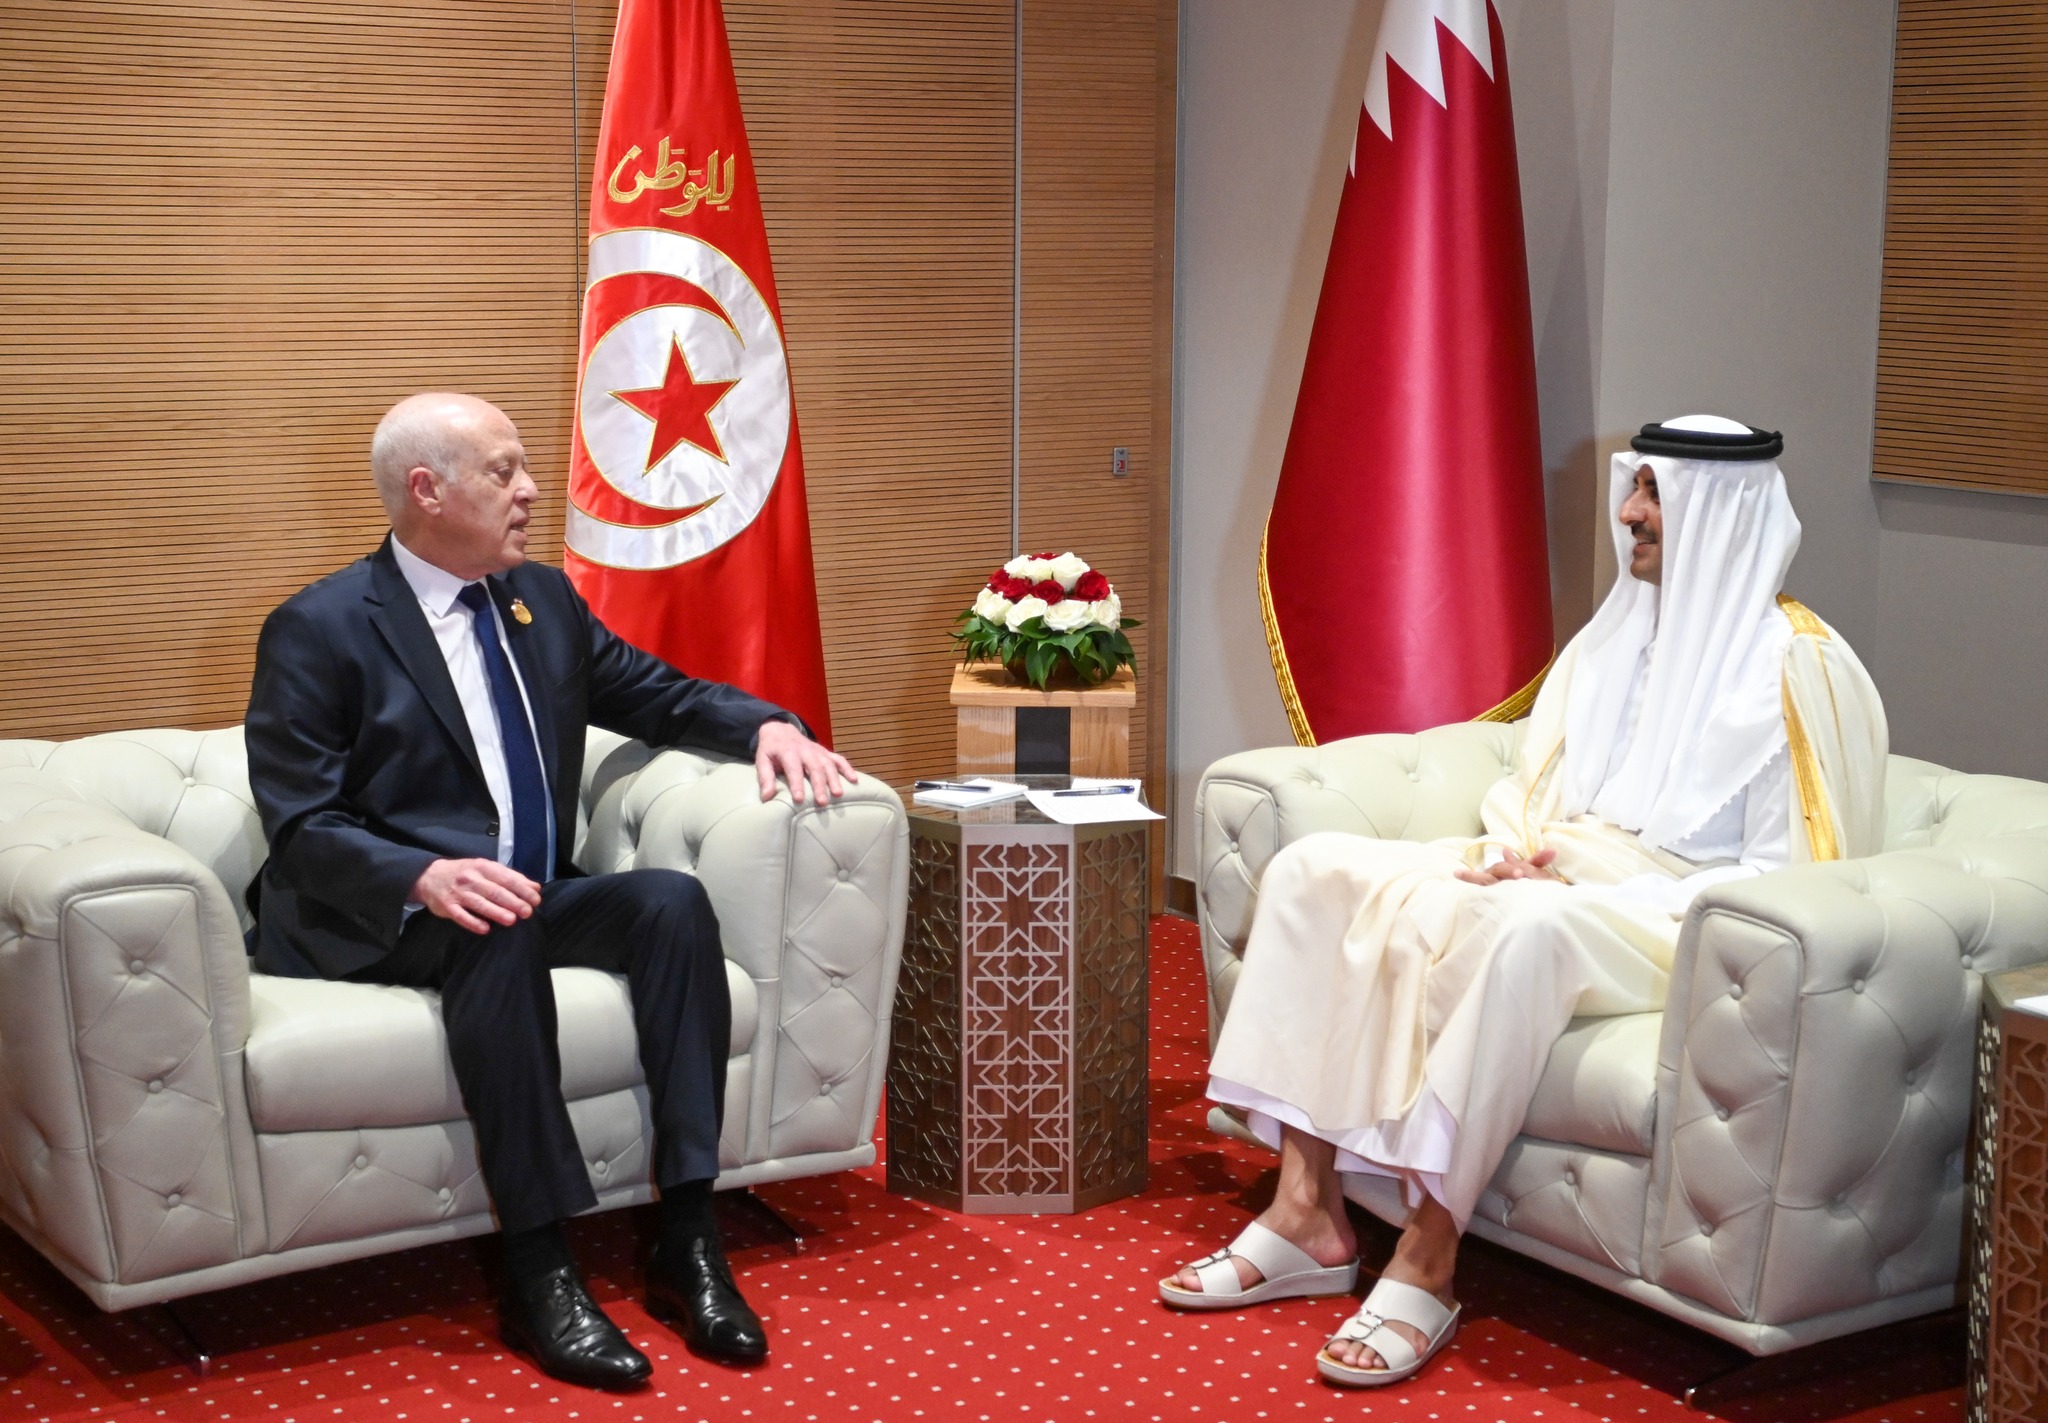 Le Qatar compte renforcer ses investissements en Tunisie